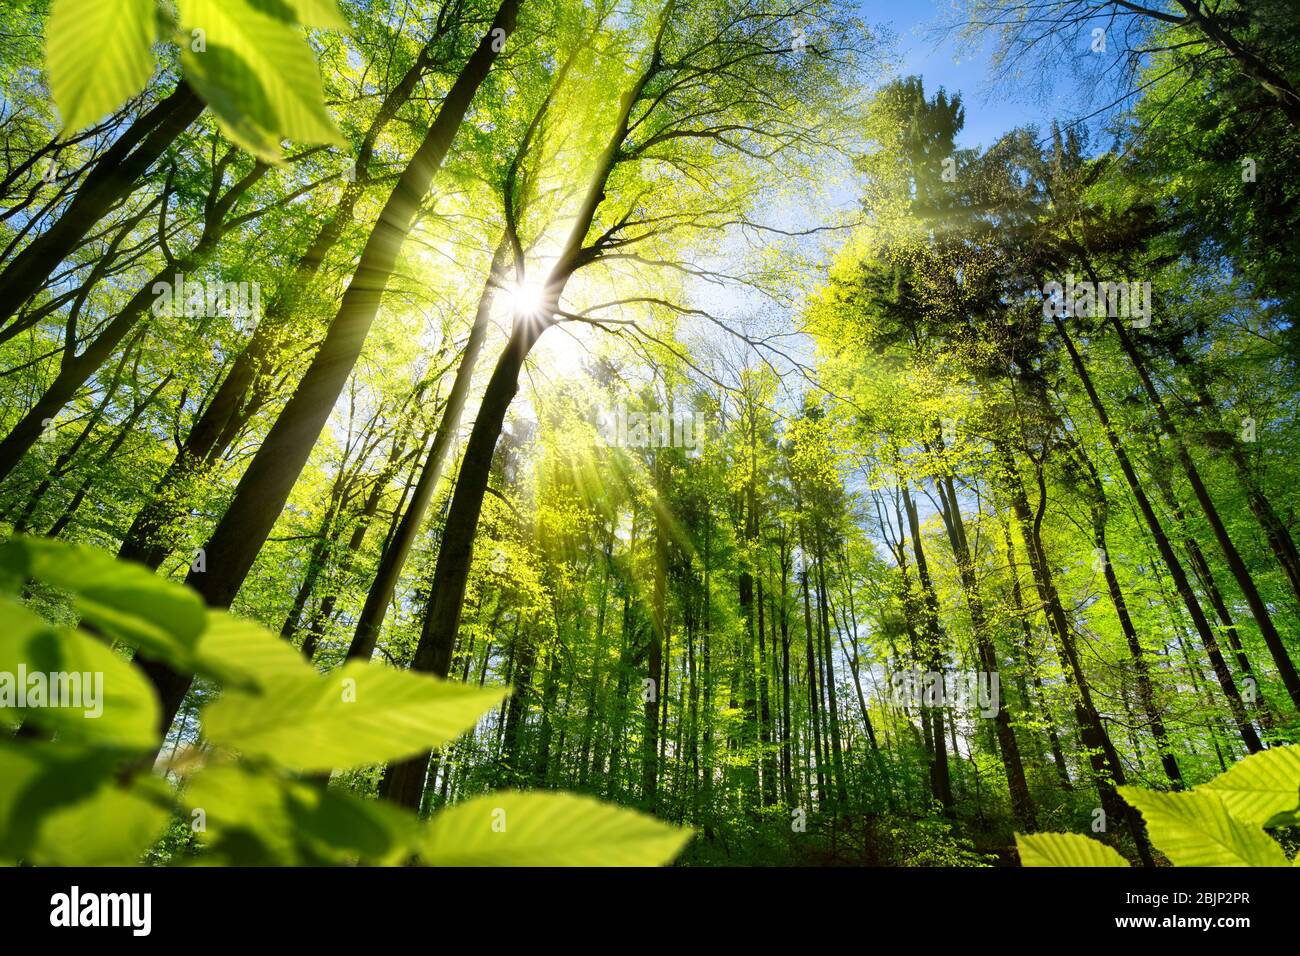 La forêt pittoresque d'arbres à feuilles caduques vert frais encadré par des feuilles, avec le soleil casting ses rayons chauds à travers le feuillage Banque D'Images